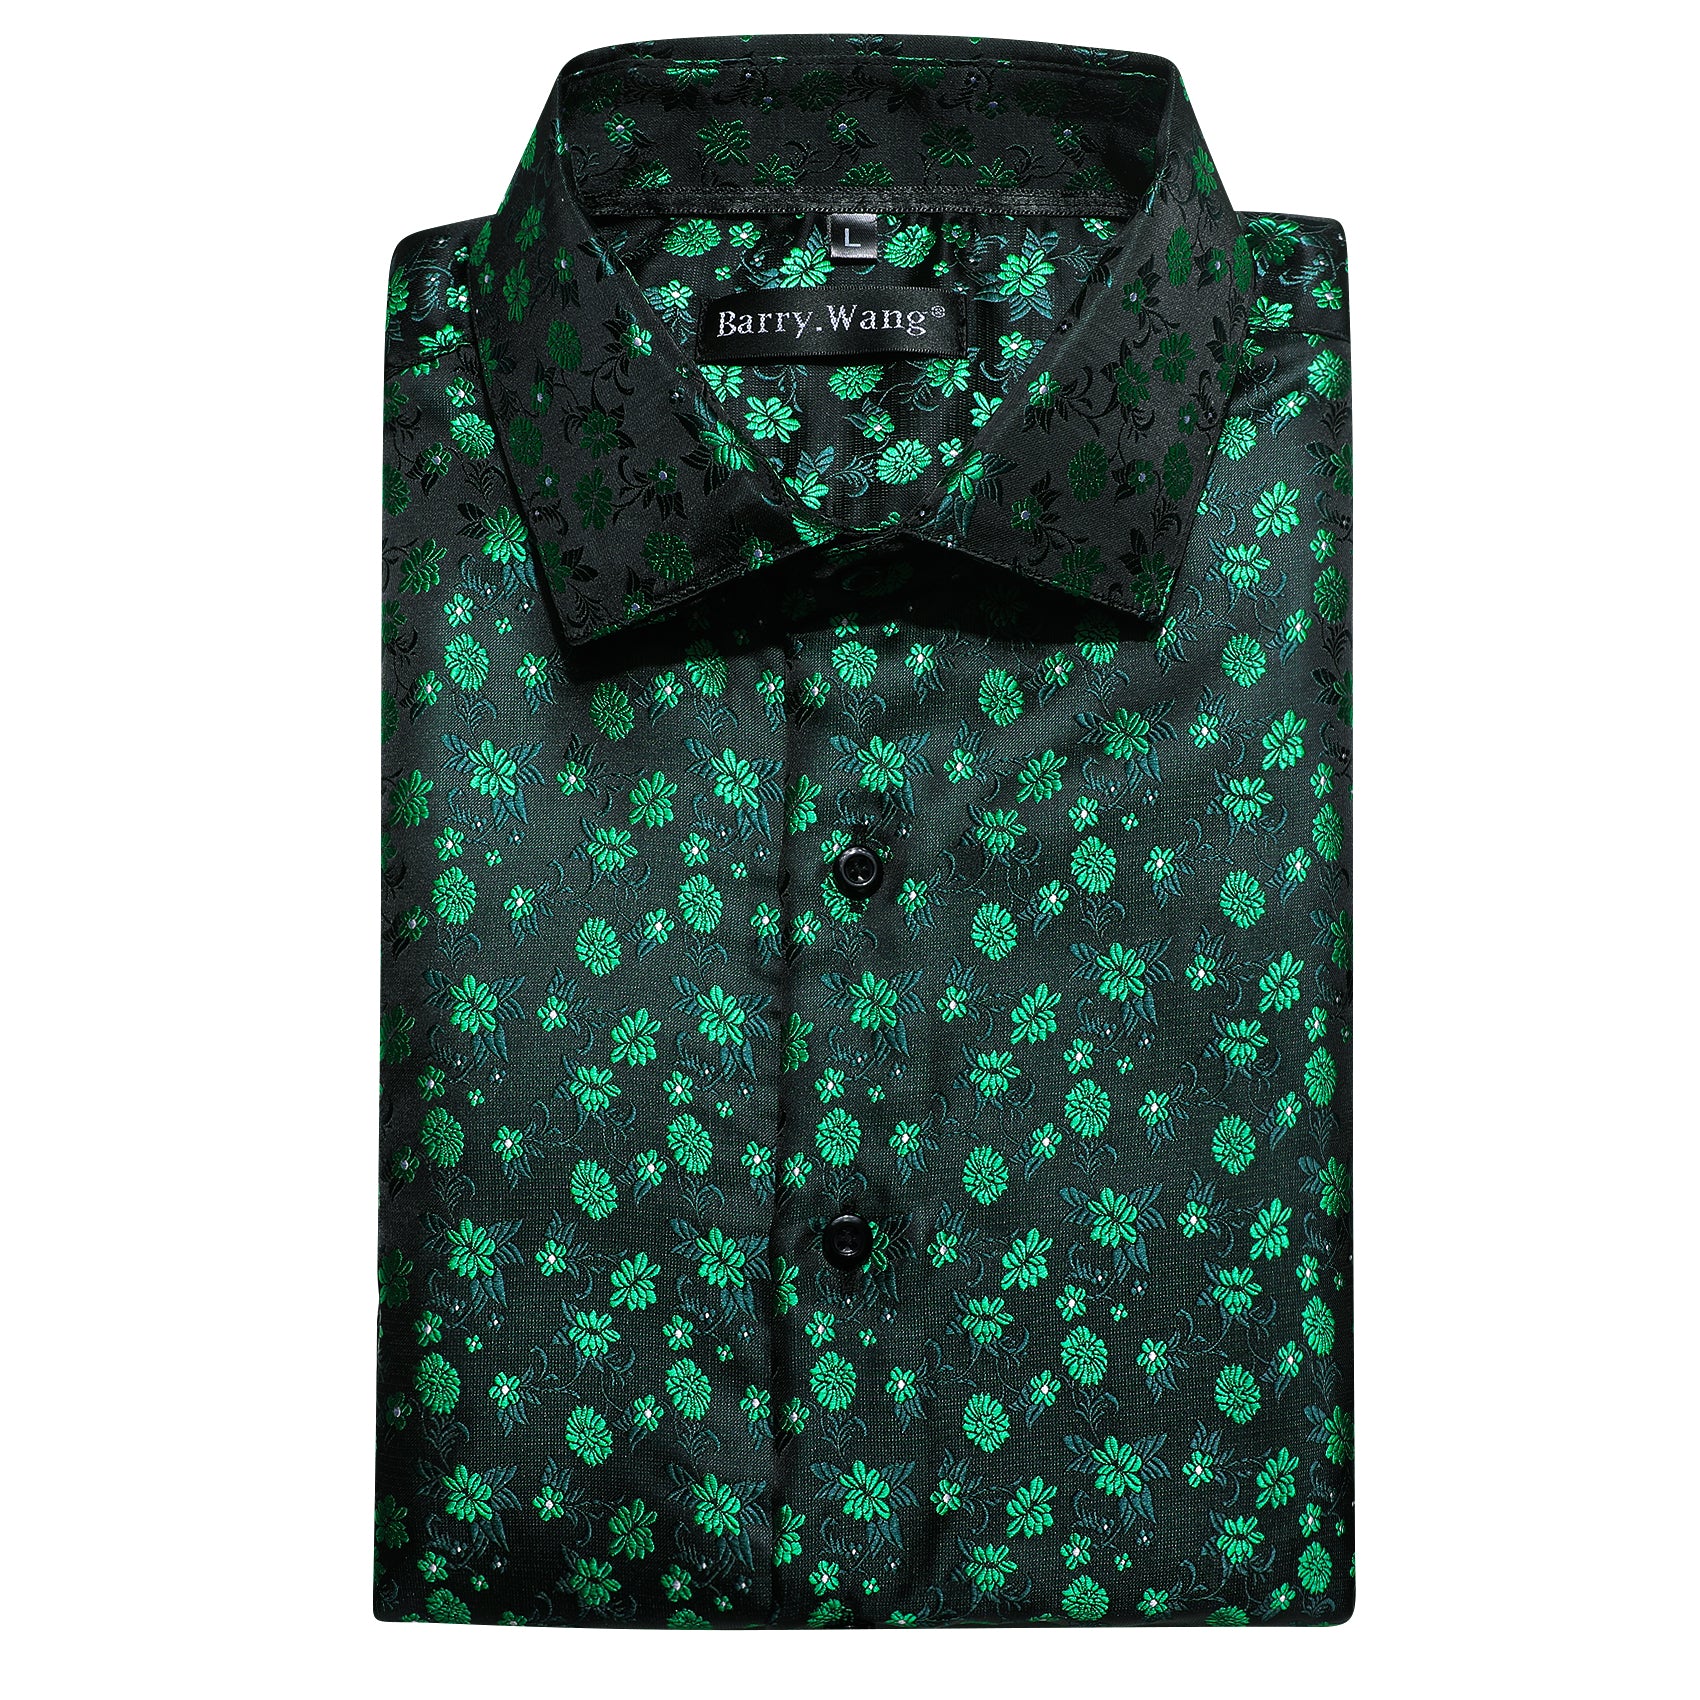 Barry.wang Green Flower Silk Men's Shirt